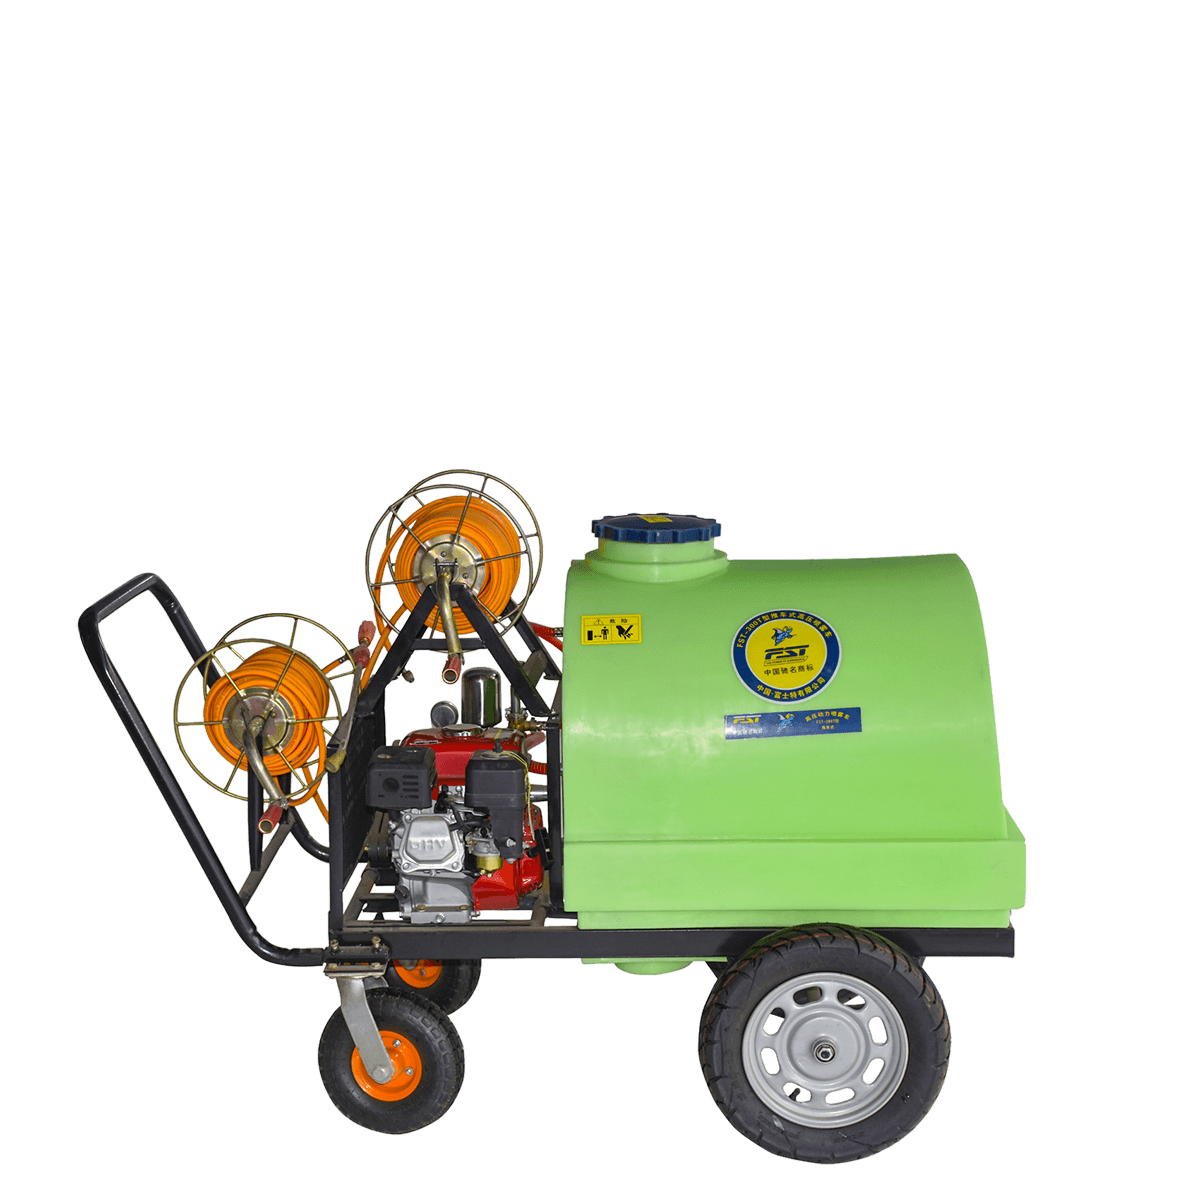 FST-300T Wheeled Power Sprayer